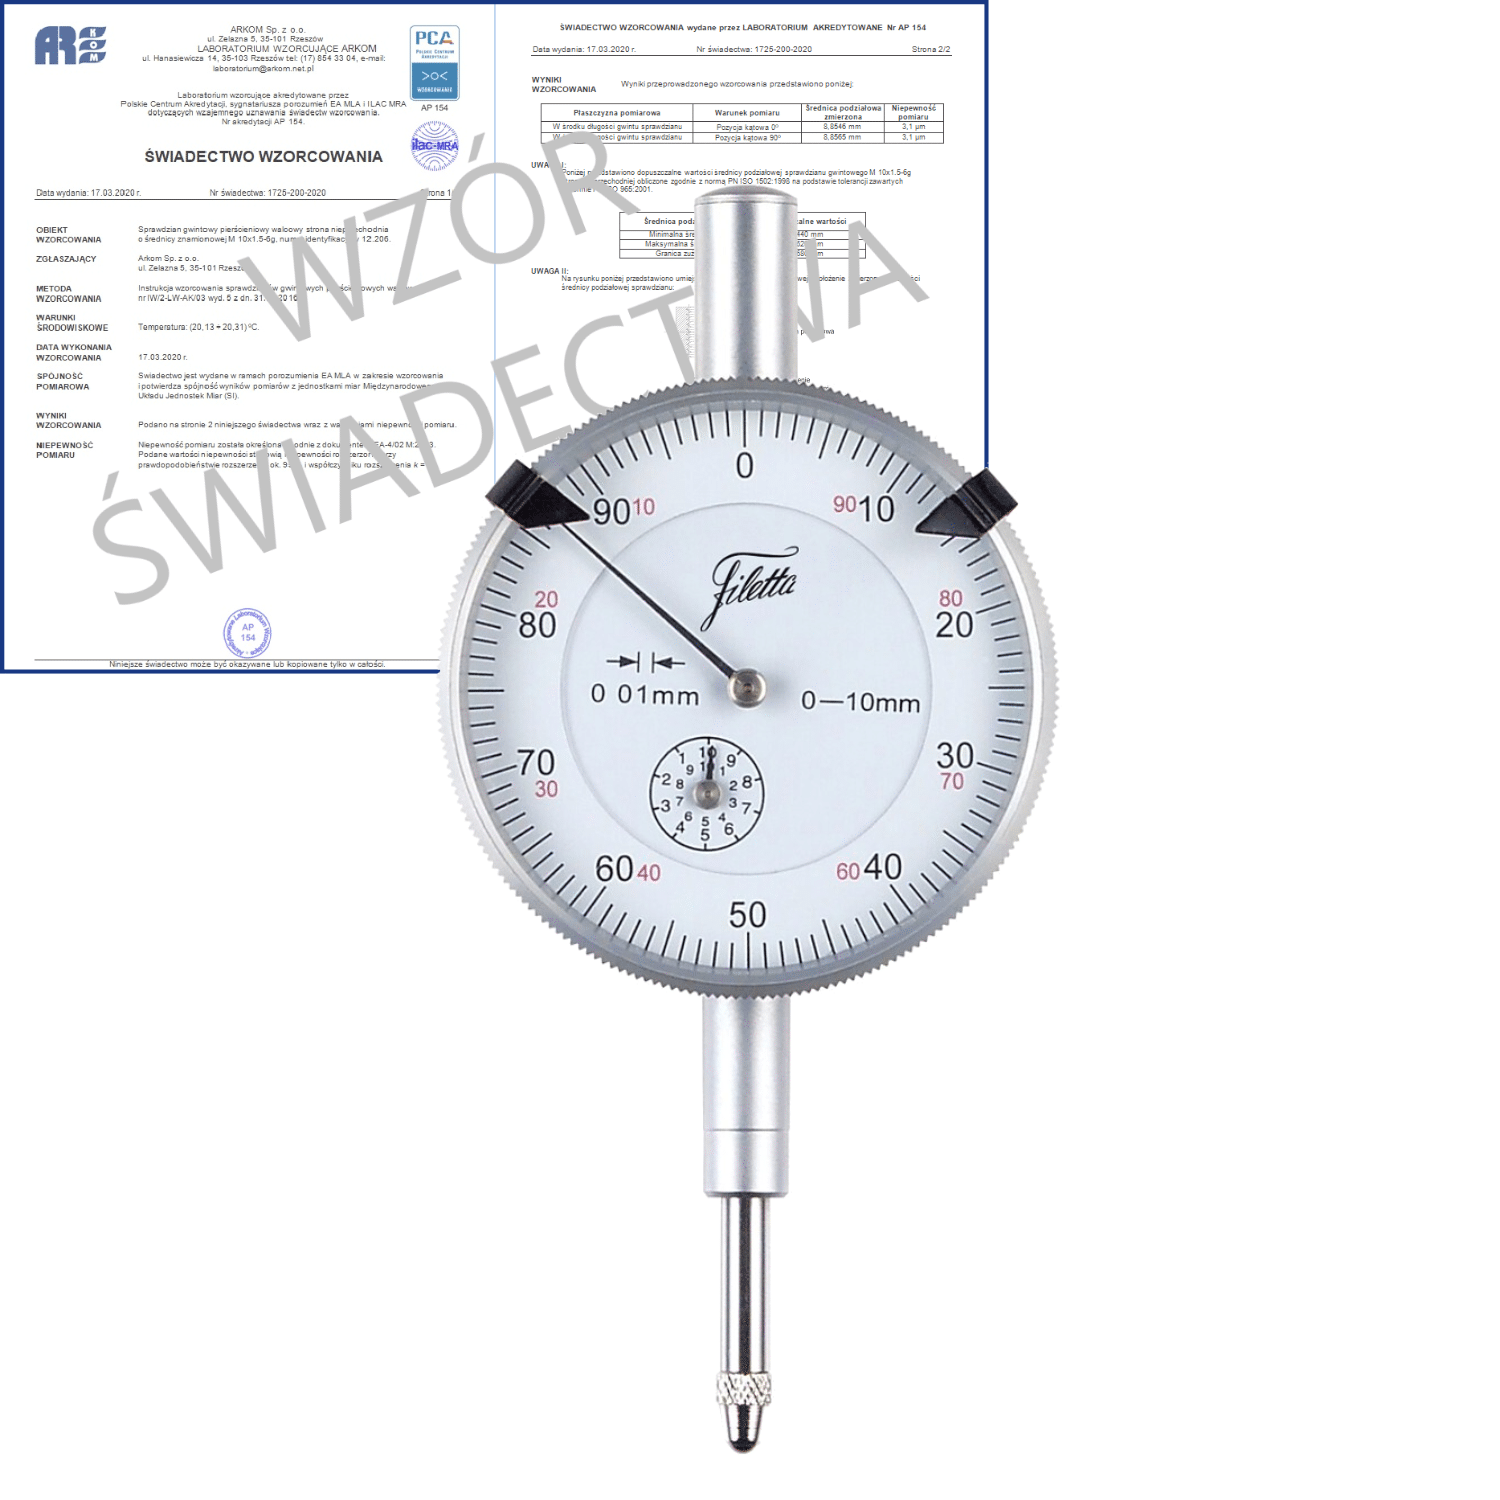 SCHUT czujnik zegarowy 0-3/0.01mm + świadectwo wzorcowania PCA 907.928 WZORC (Zdjęcie 1)